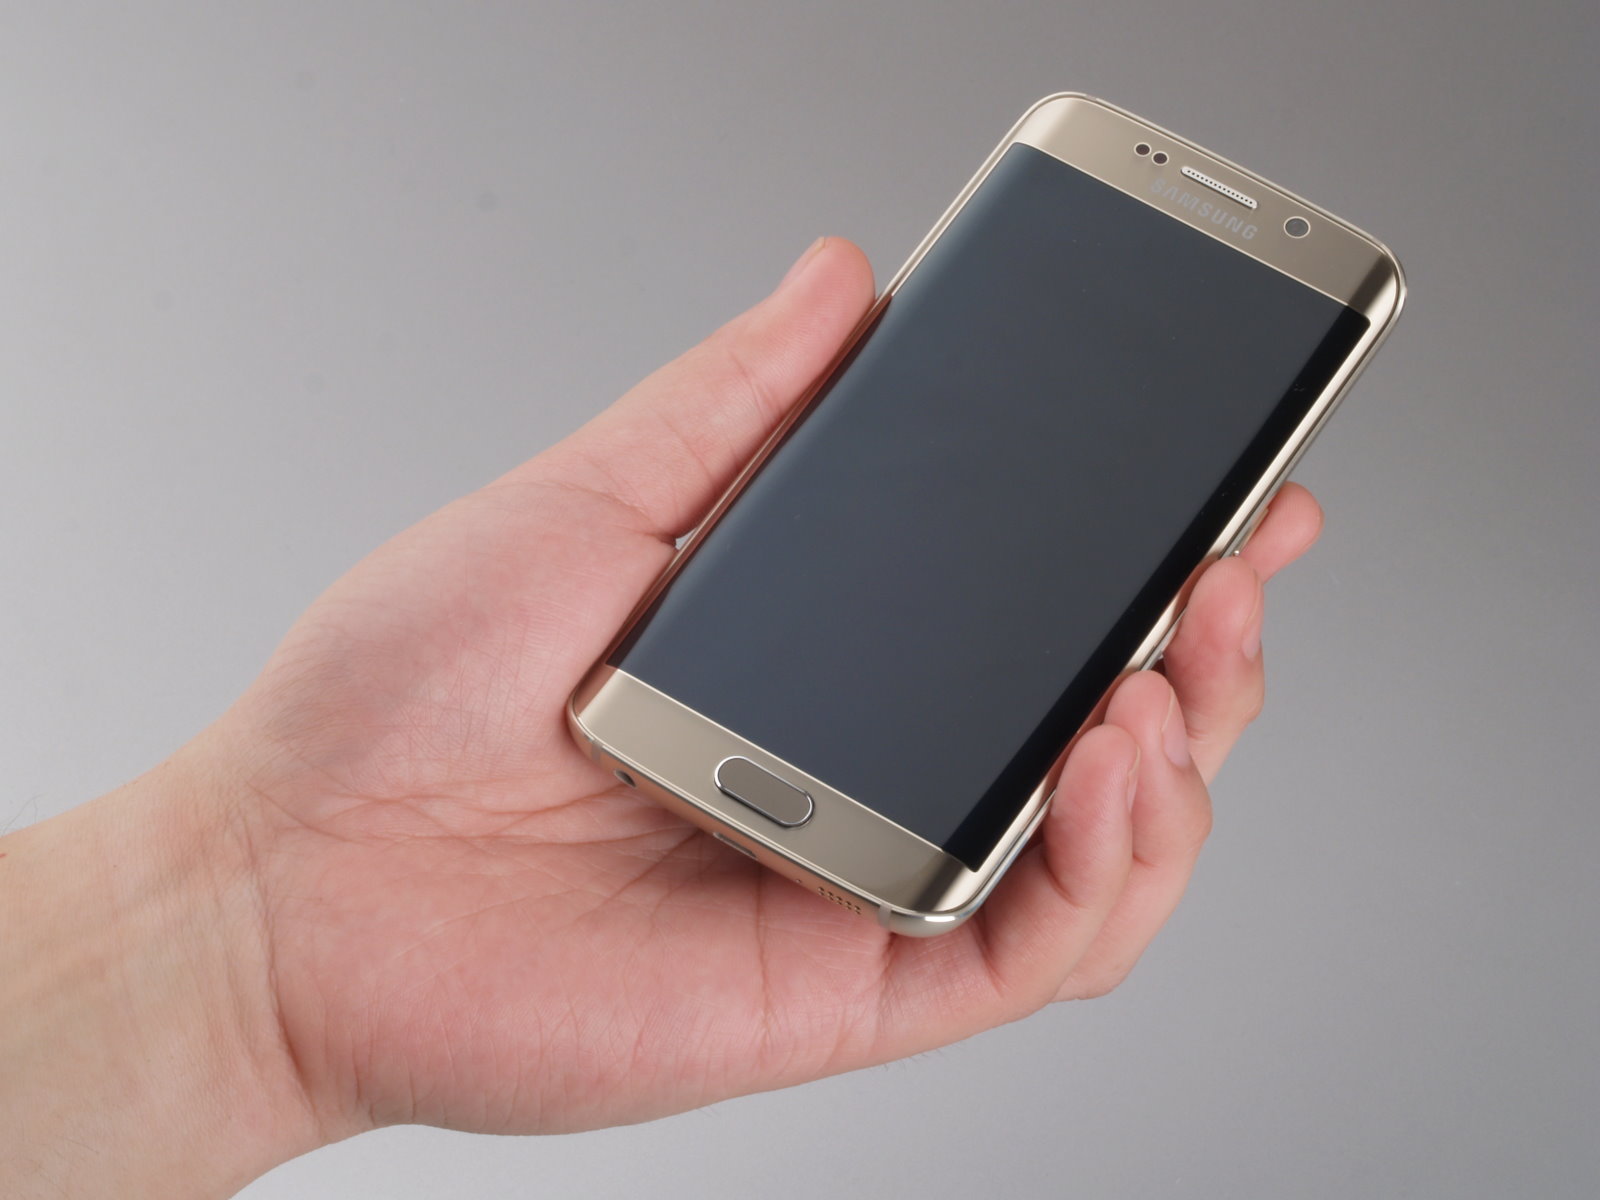 首款曲面屏手机 Galaxy三星S6 Edge热销-搜狐数码